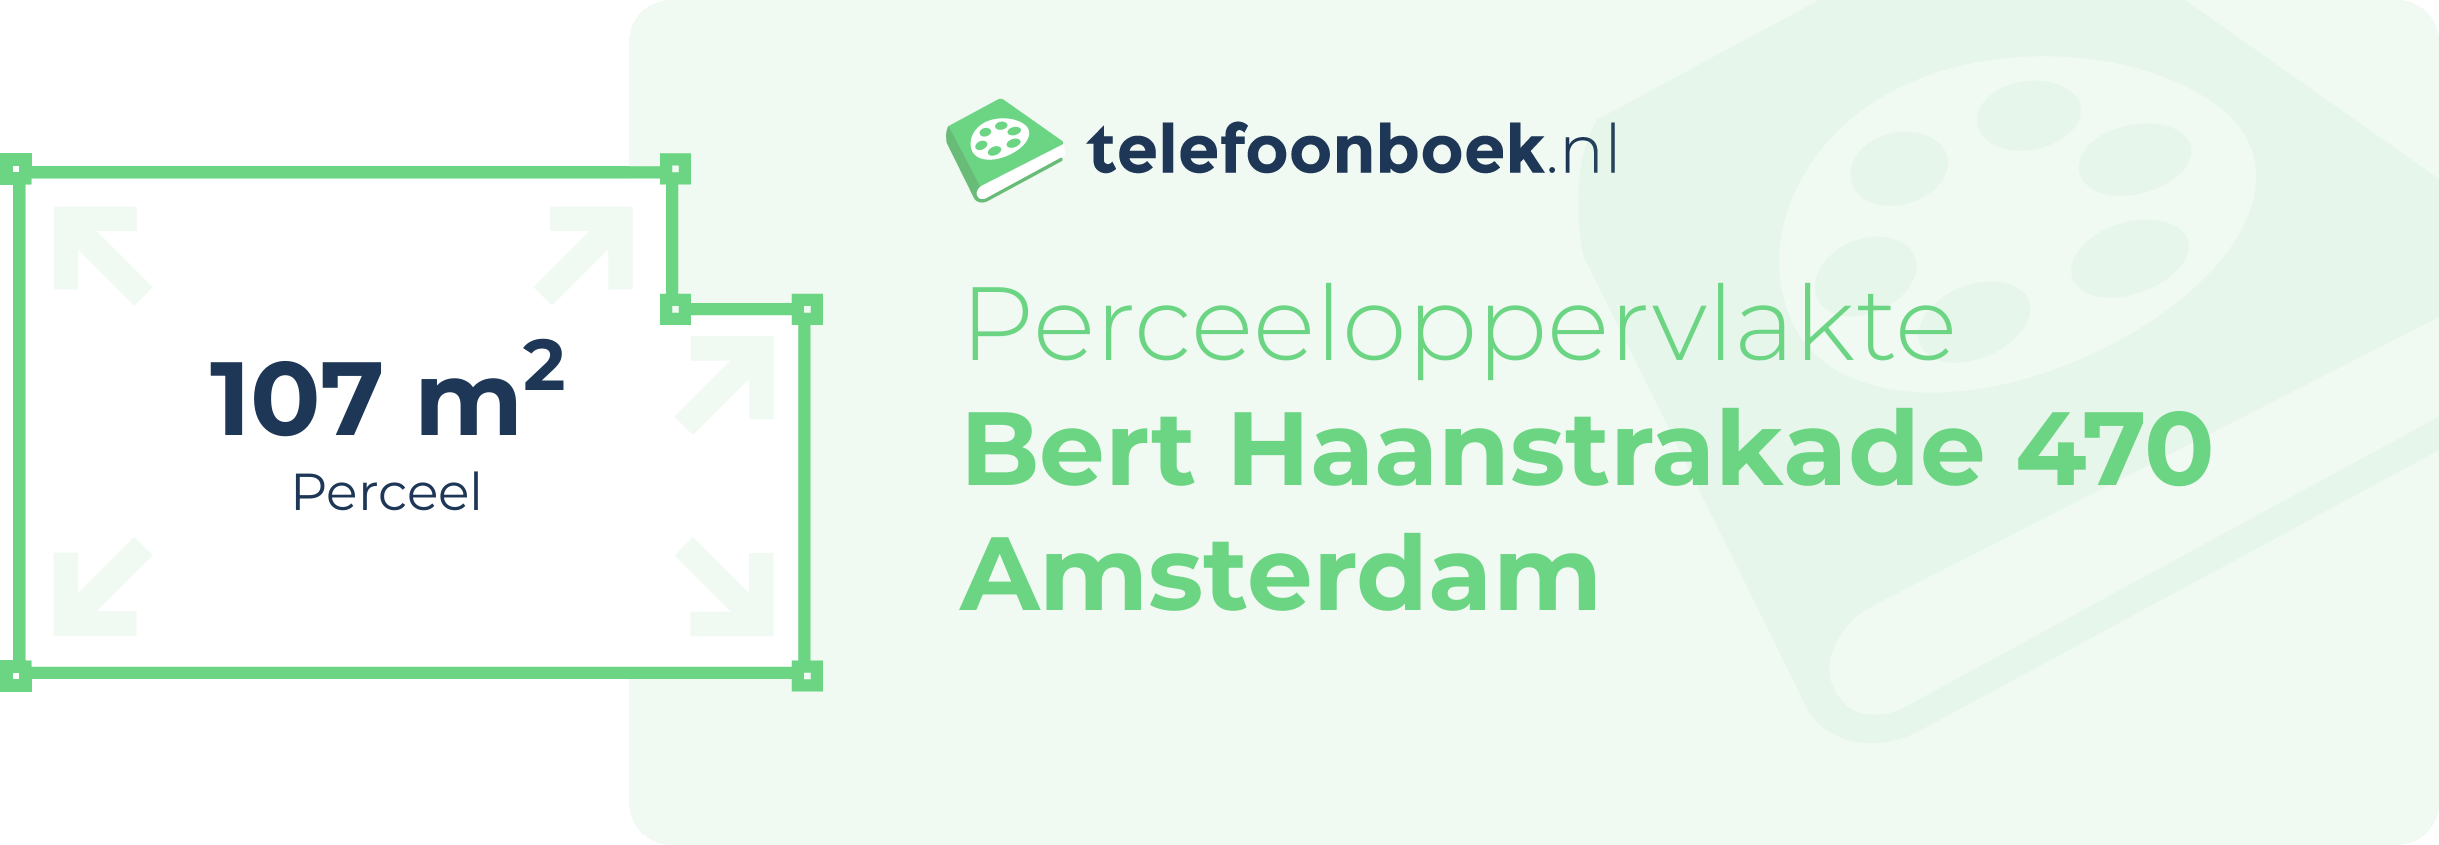 Perceeloppervlakte Bert Haanstrakade 470 Amsterdam